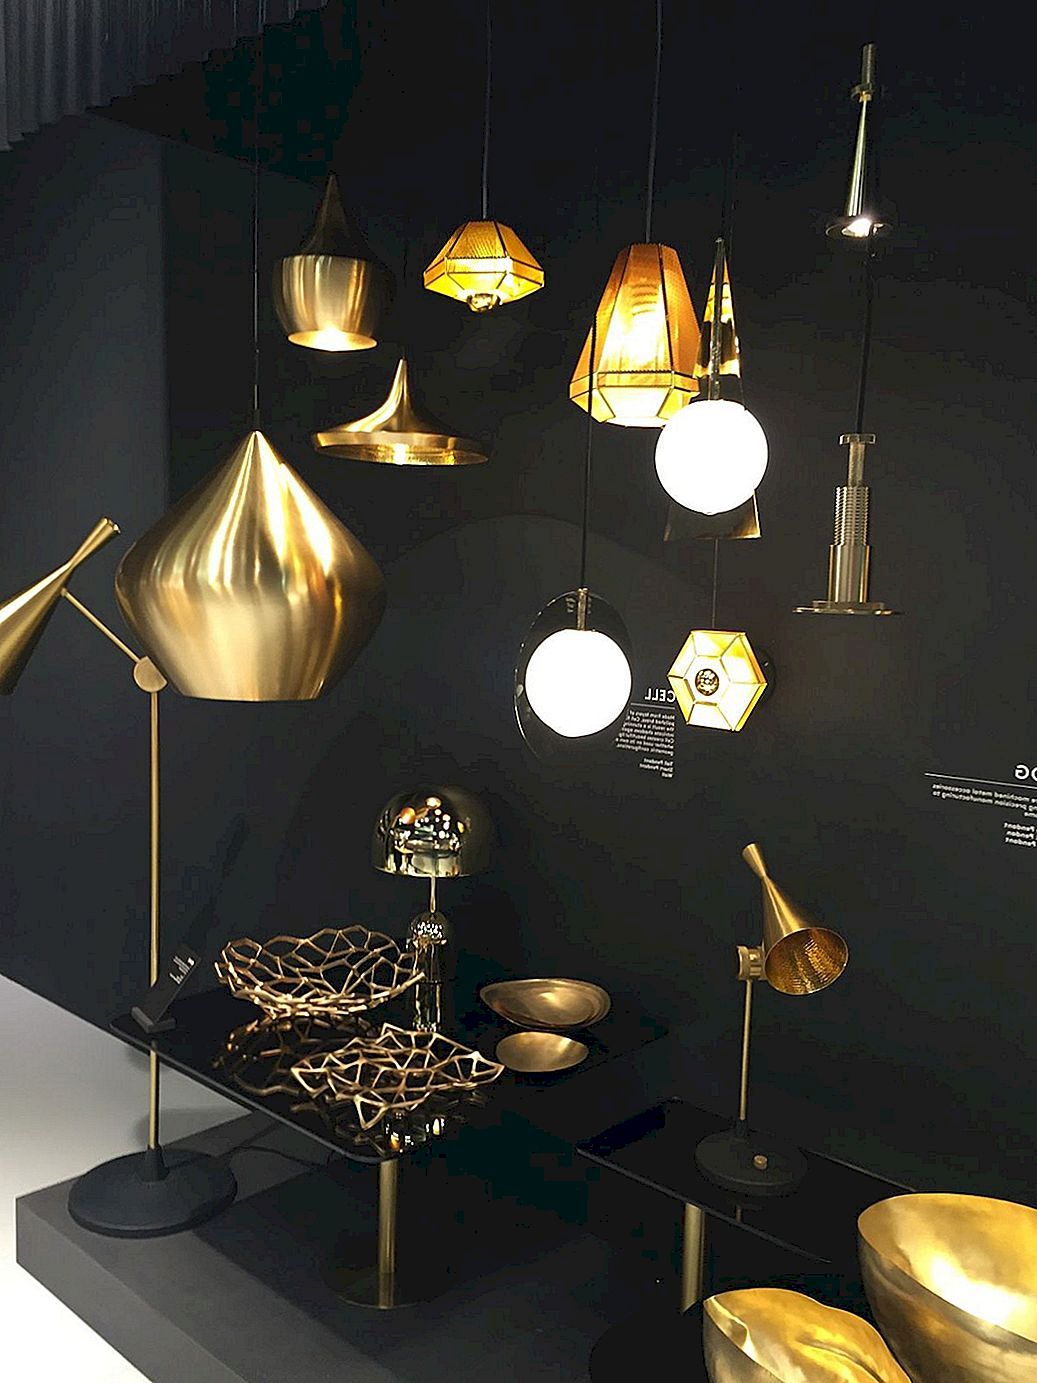 Brass Light Fixtures stjäla all uppmärksamhet med deras gyllene charm